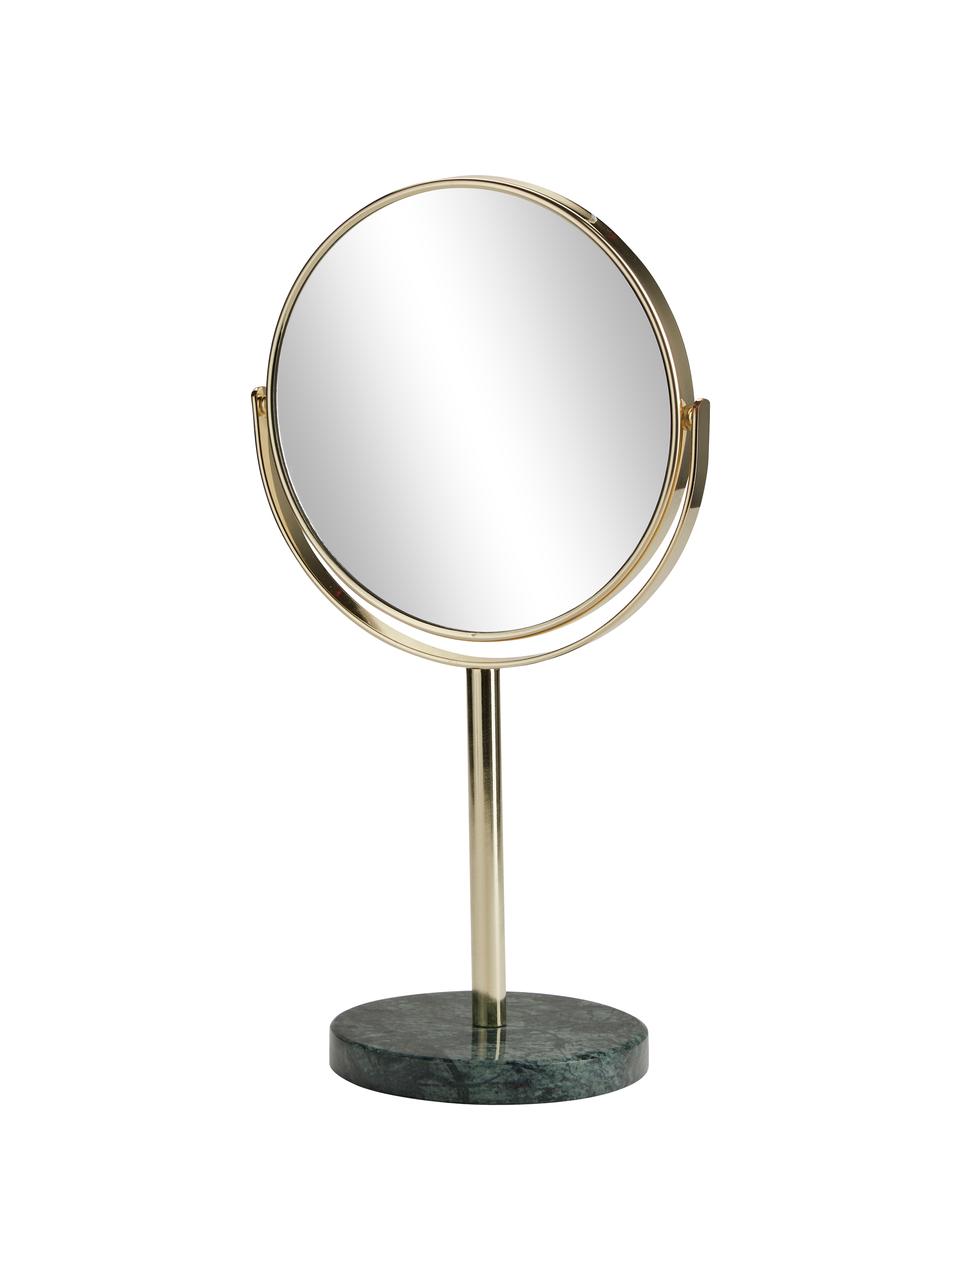 Runder Kosmetikspiegel Ramona mit grünem Marmorfuss, Rahmen: Metall, Spiegelfläche: Spiegelglas, Goldfarben, Grün, marmoriert, Ø 20 x H 34 cm